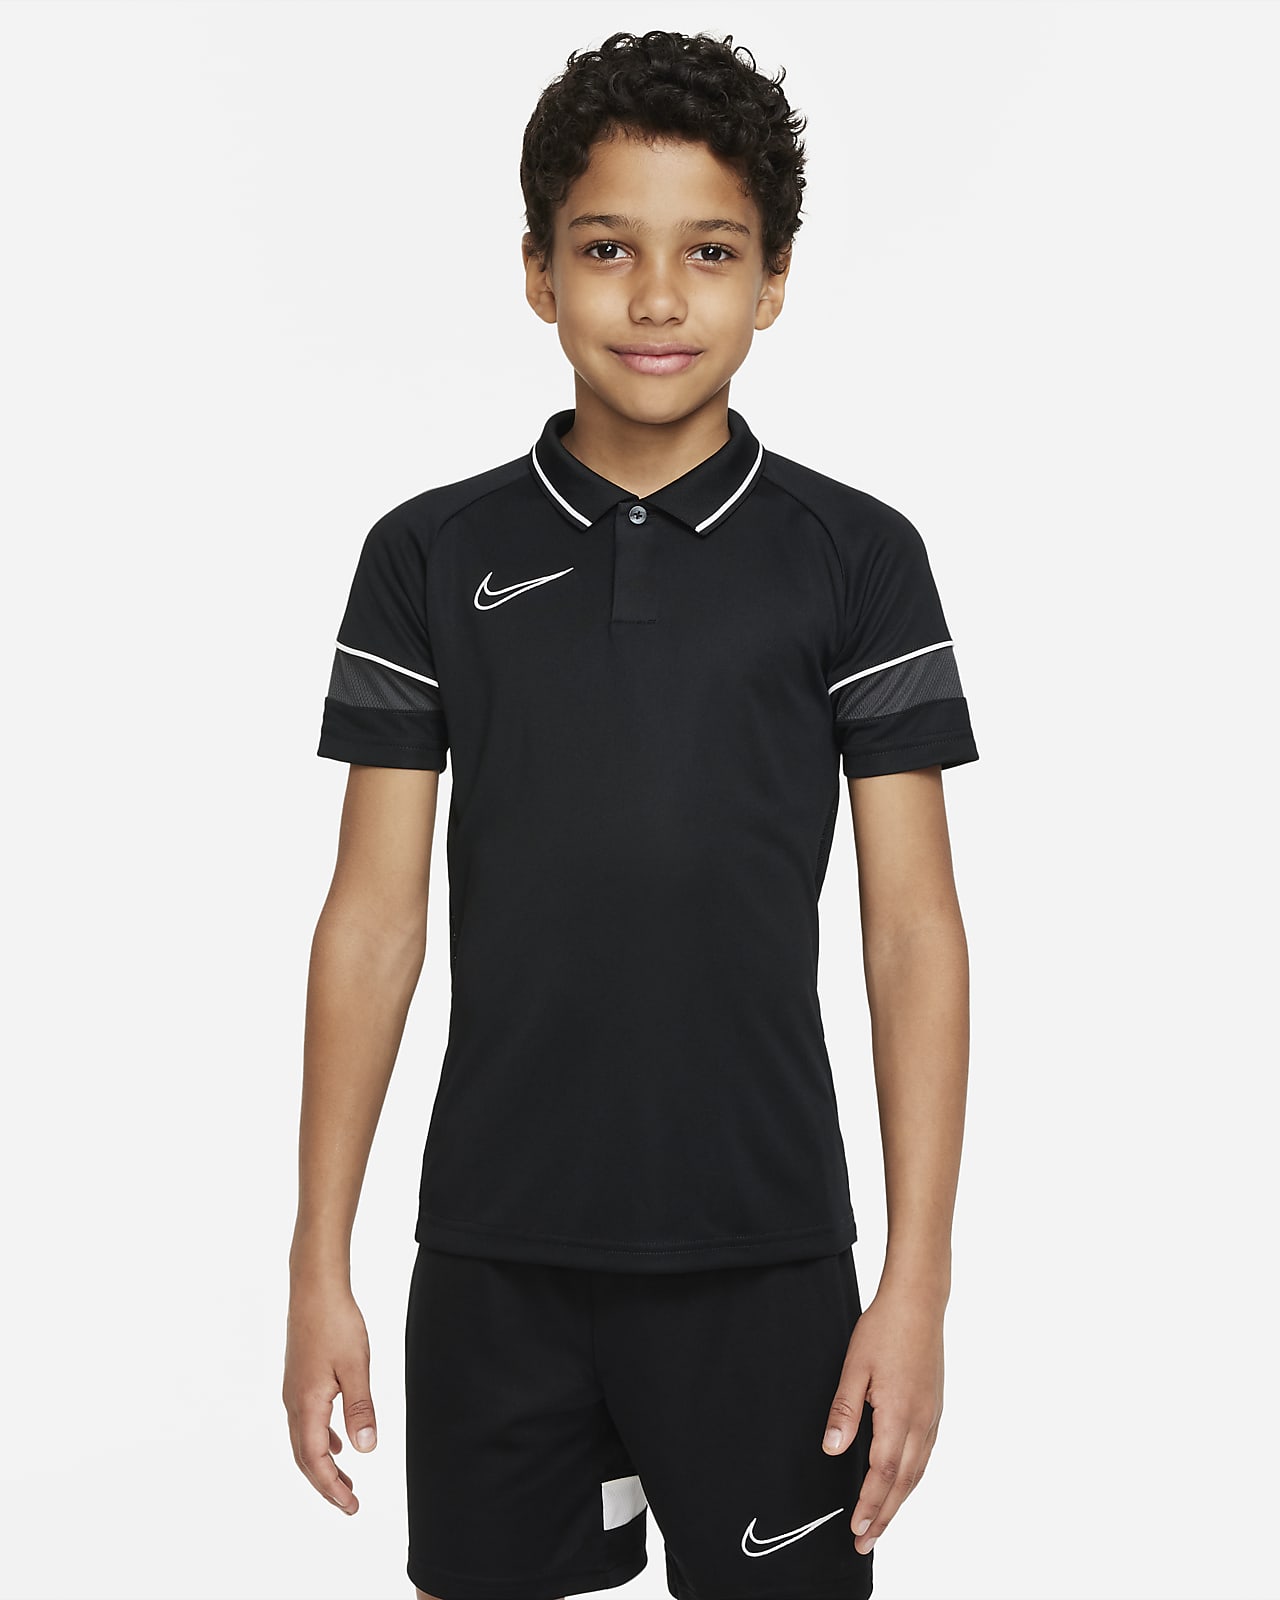 เสื้อโปโลฟุตบอลเด็กโต Nike Dri-FIT Academy